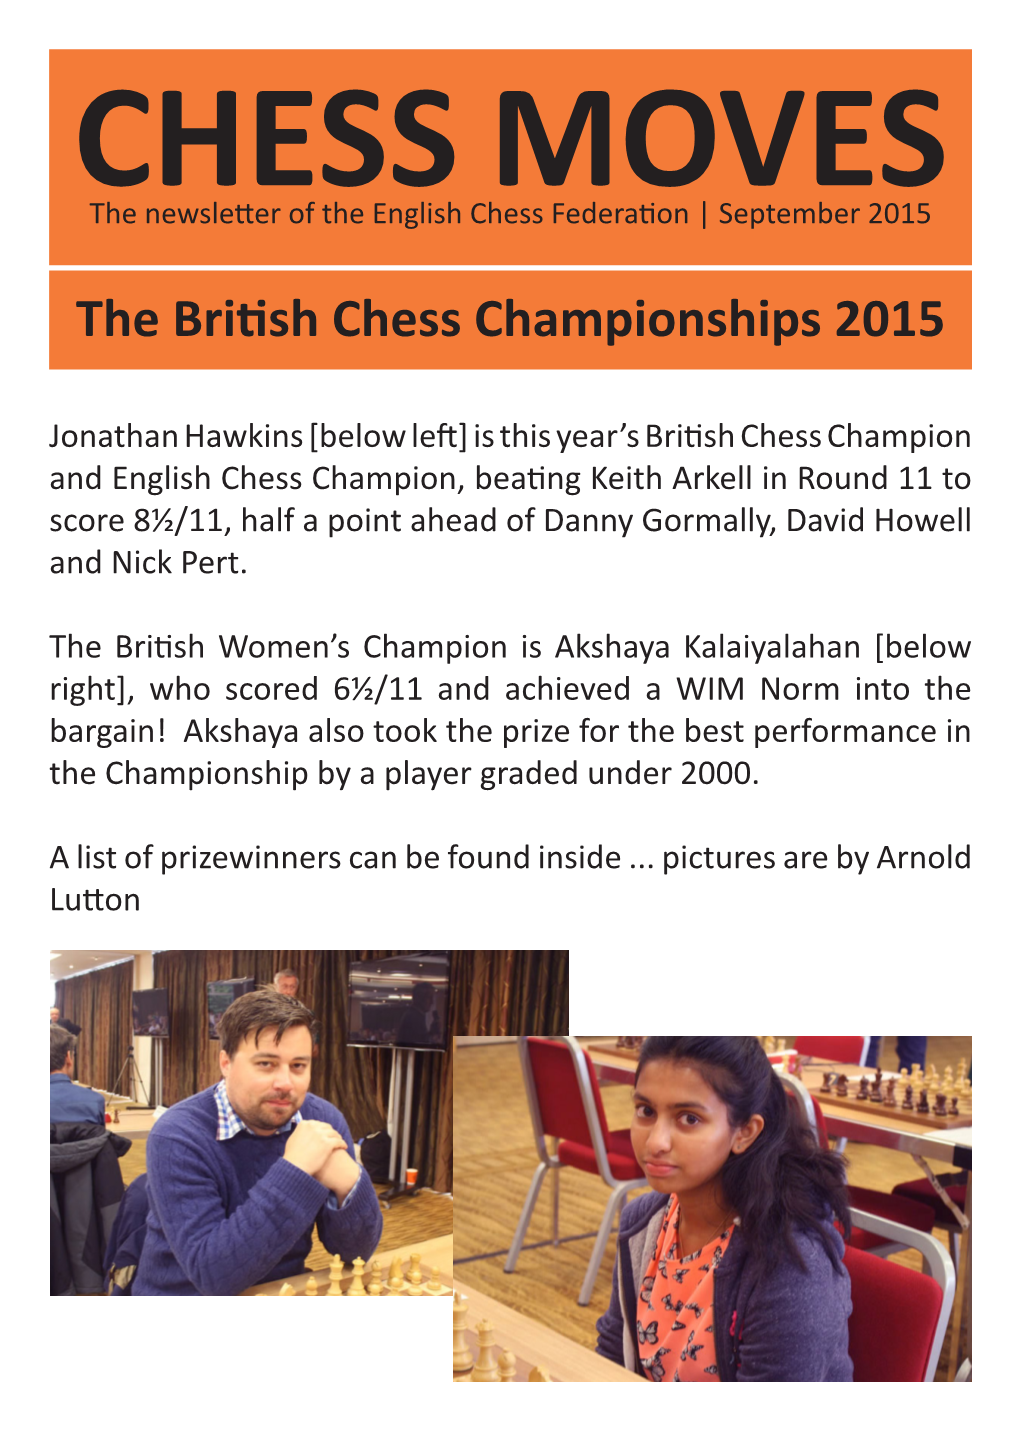 The British Chess Championships 2015